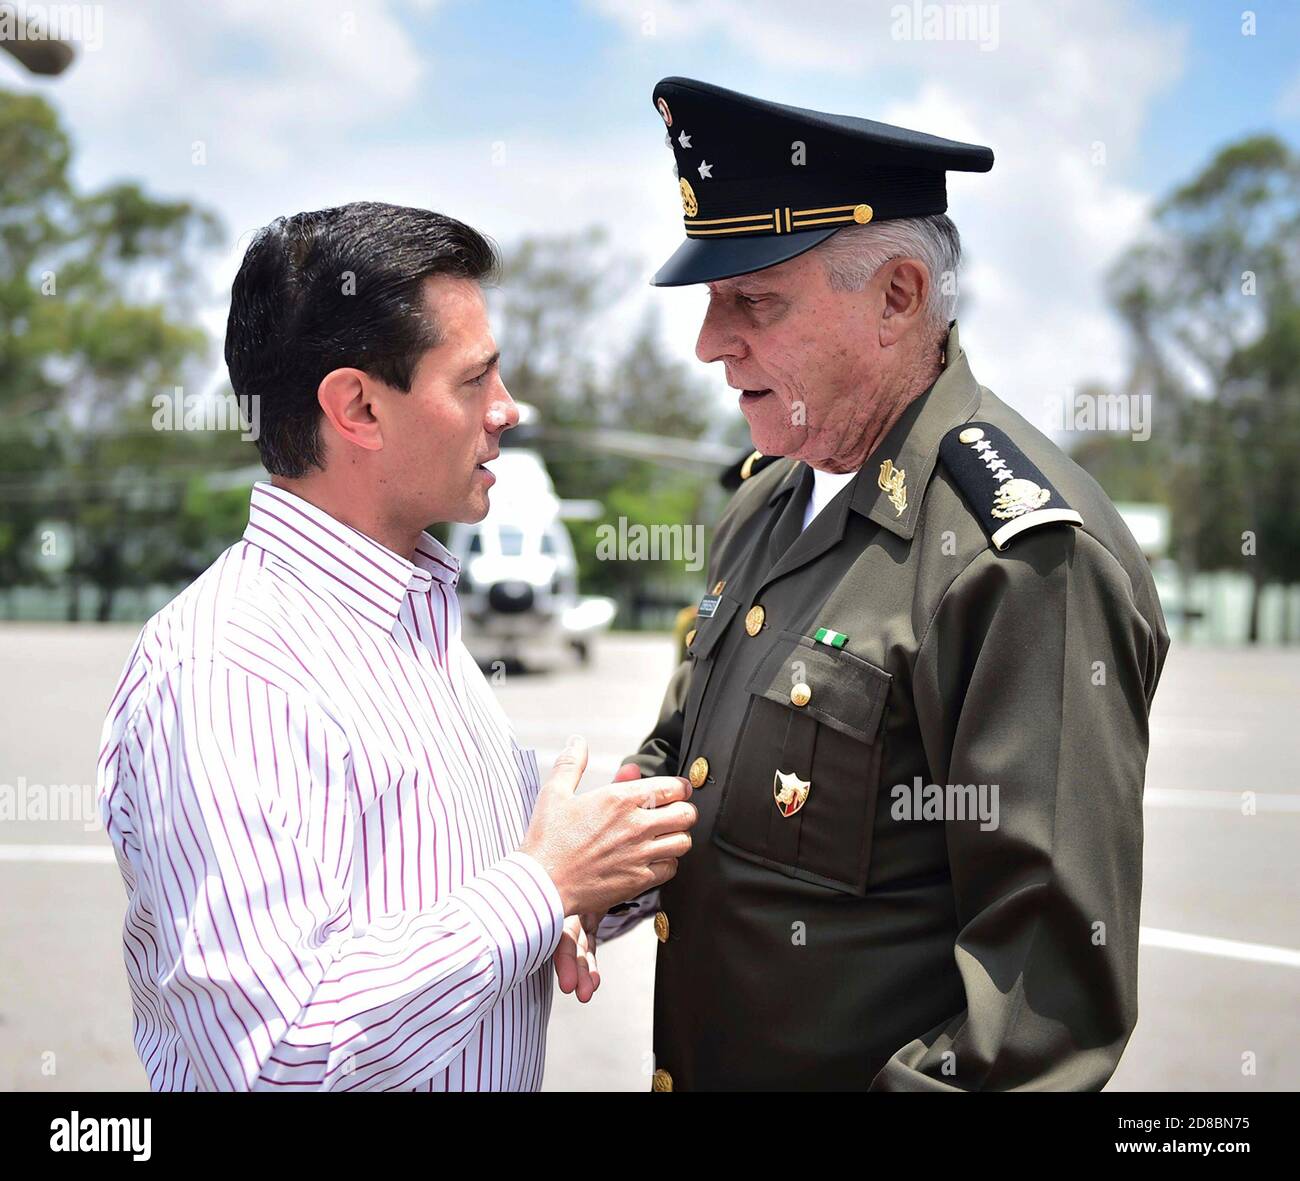 Le président mexicain Enrique Pena Nieto, à gauche, s'entretient avec le général Salvador Cienfuegos Zepeda, ministre de la Défense, lors d'un événement qui s'est produit le 27 juin 2017 à Puebla, au Mexique. Cienfuegos a été arrêté le 16 octobre 2020 à l'aéroport international de Los Angeles et accusé de corruption liée à la drogue. Banque D'Images